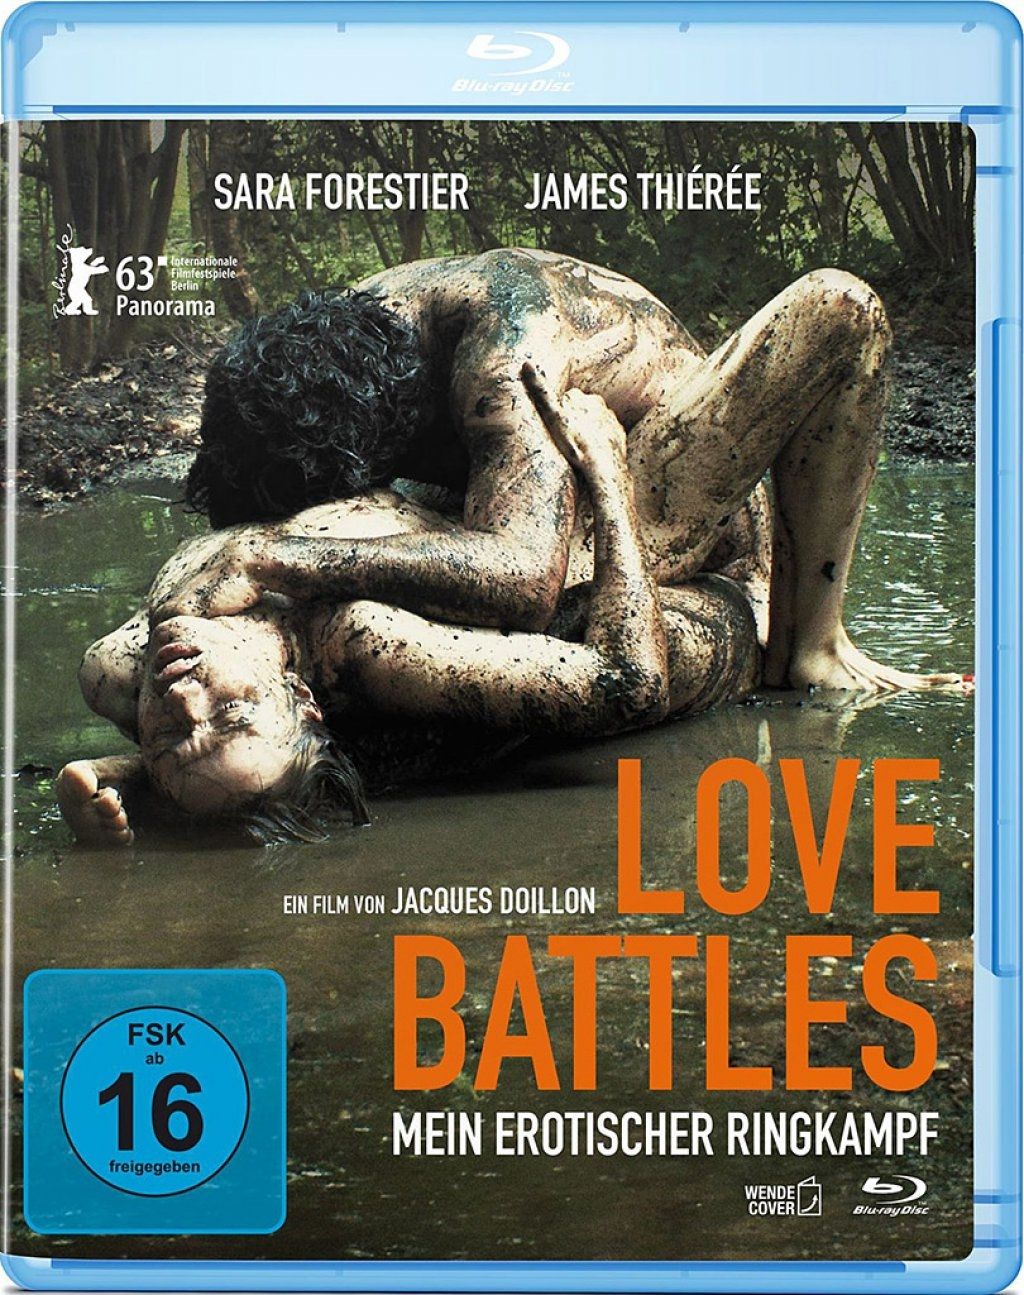 Love Battles - Mein erotischer Ringkampf (BLURAY)